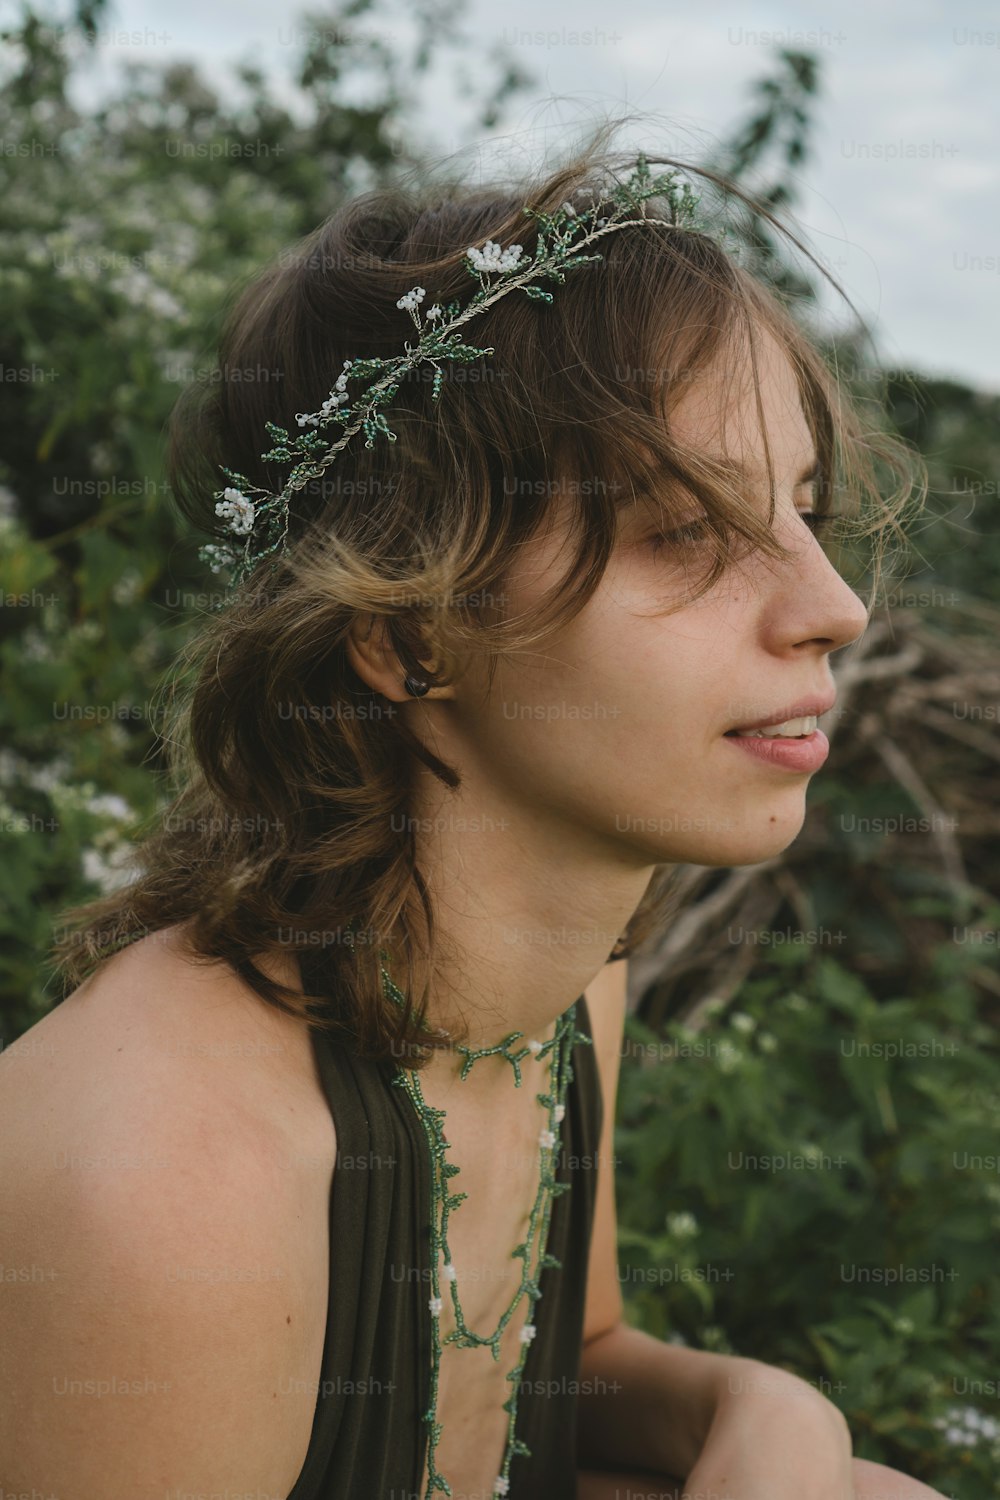 une femme portant un collier avec des fleurs dessus